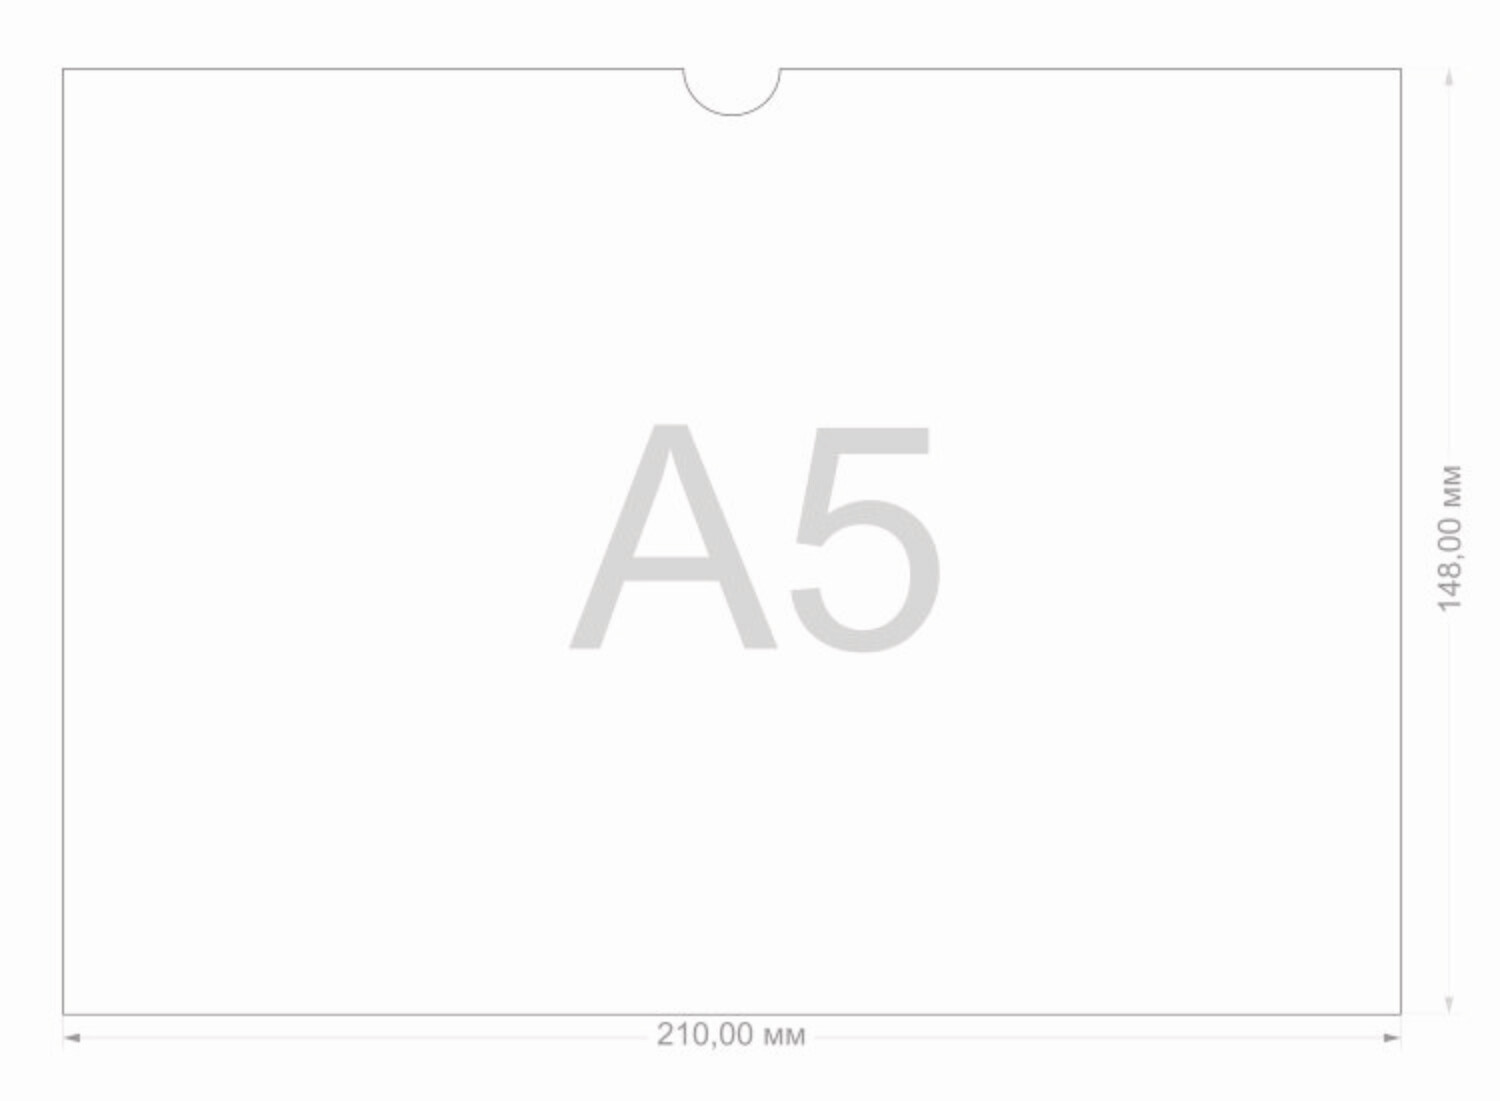 А5 горизонтальный. Карман а5 горизонтальный размер. Карман а5 из ПЭТ Размеры. Размер кармашка а5. Размер кармана под а6.